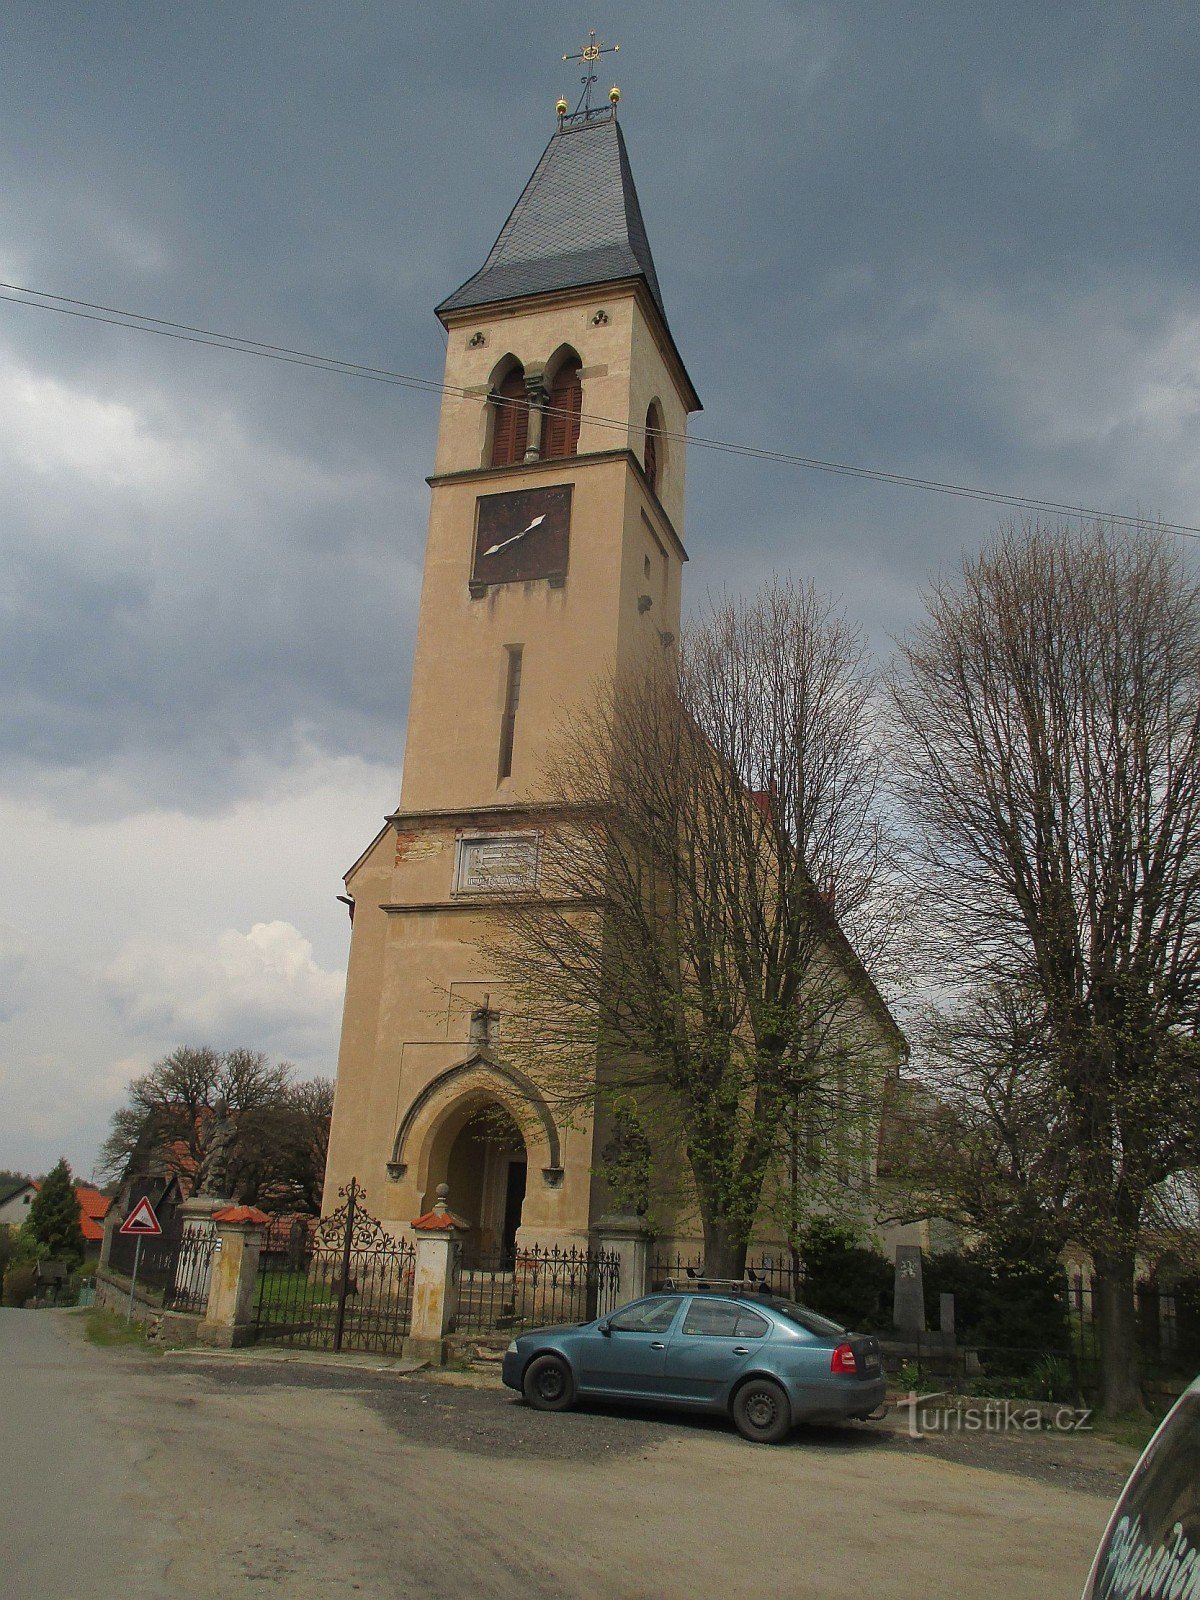 Kościół św. Jaskółka oknówka